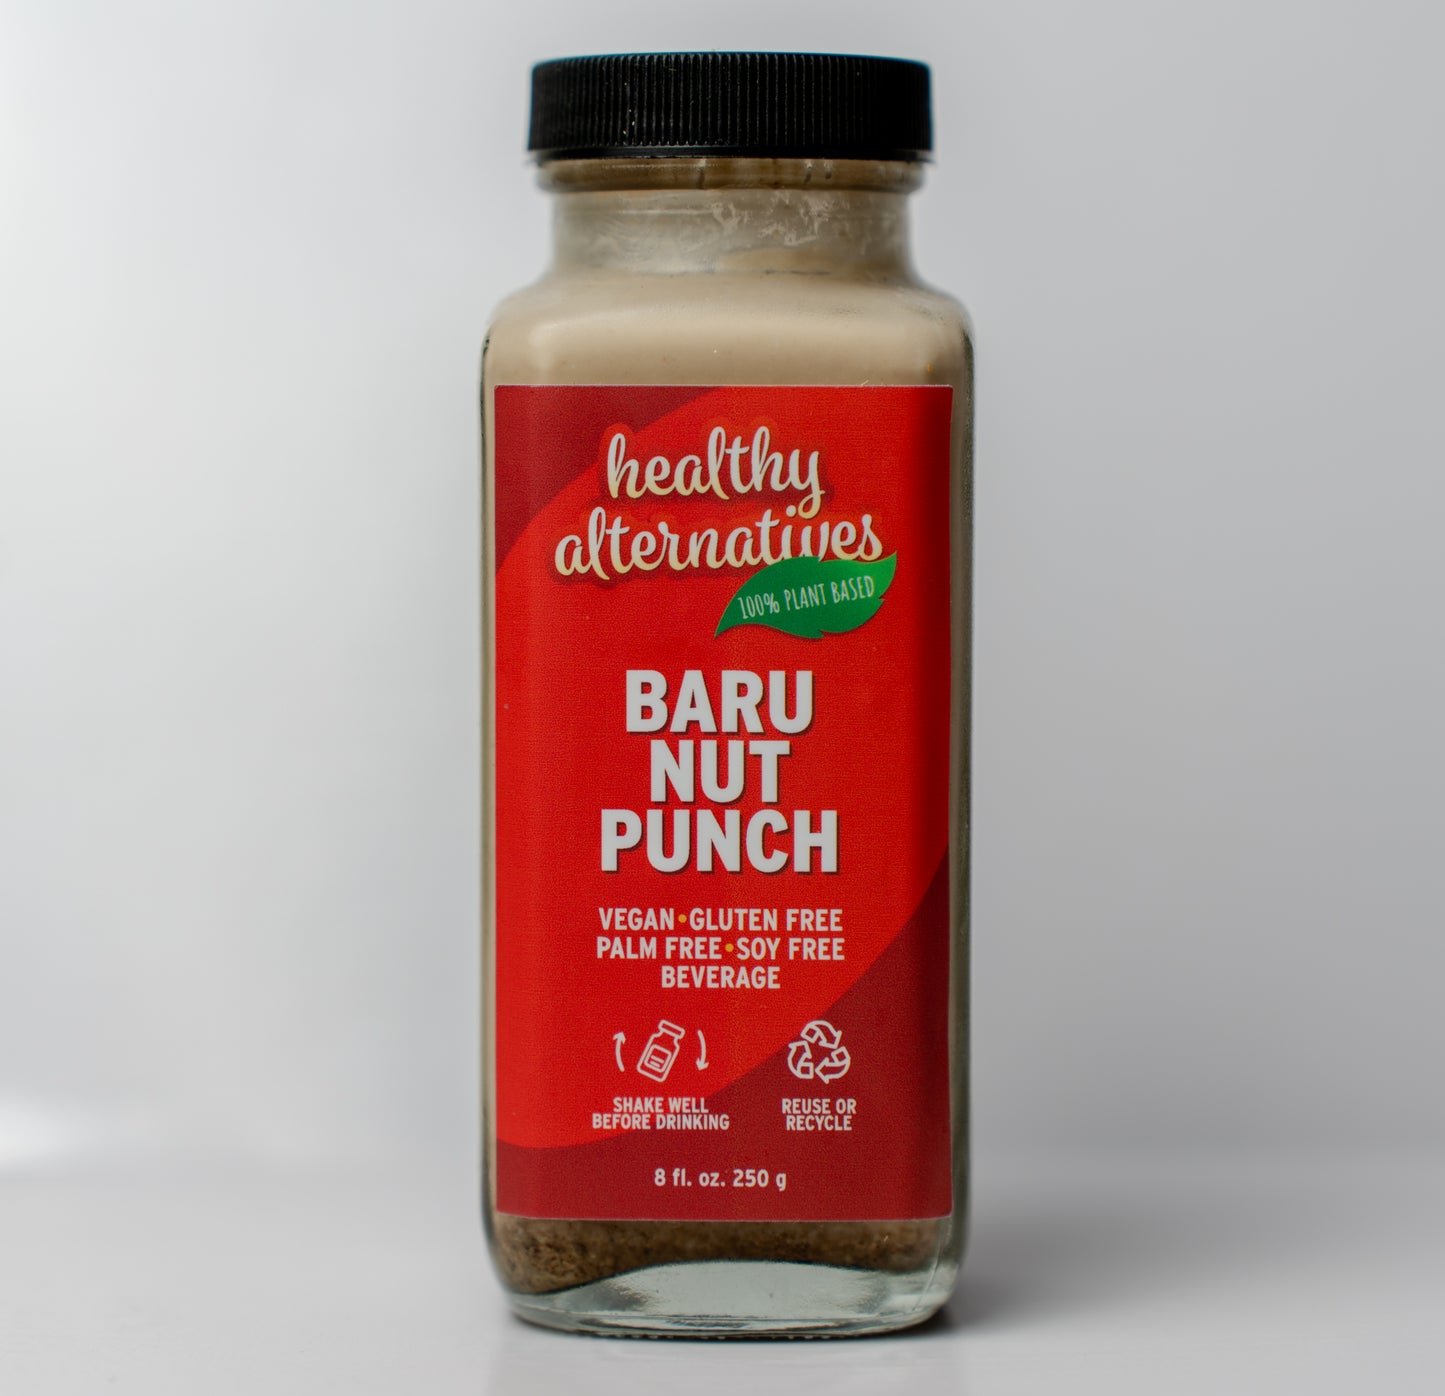 Baru Nut Punch Alternative Snacks Toronto Ontario Canada Locally Produced Local Business Healthy Snack Healthy Nuts